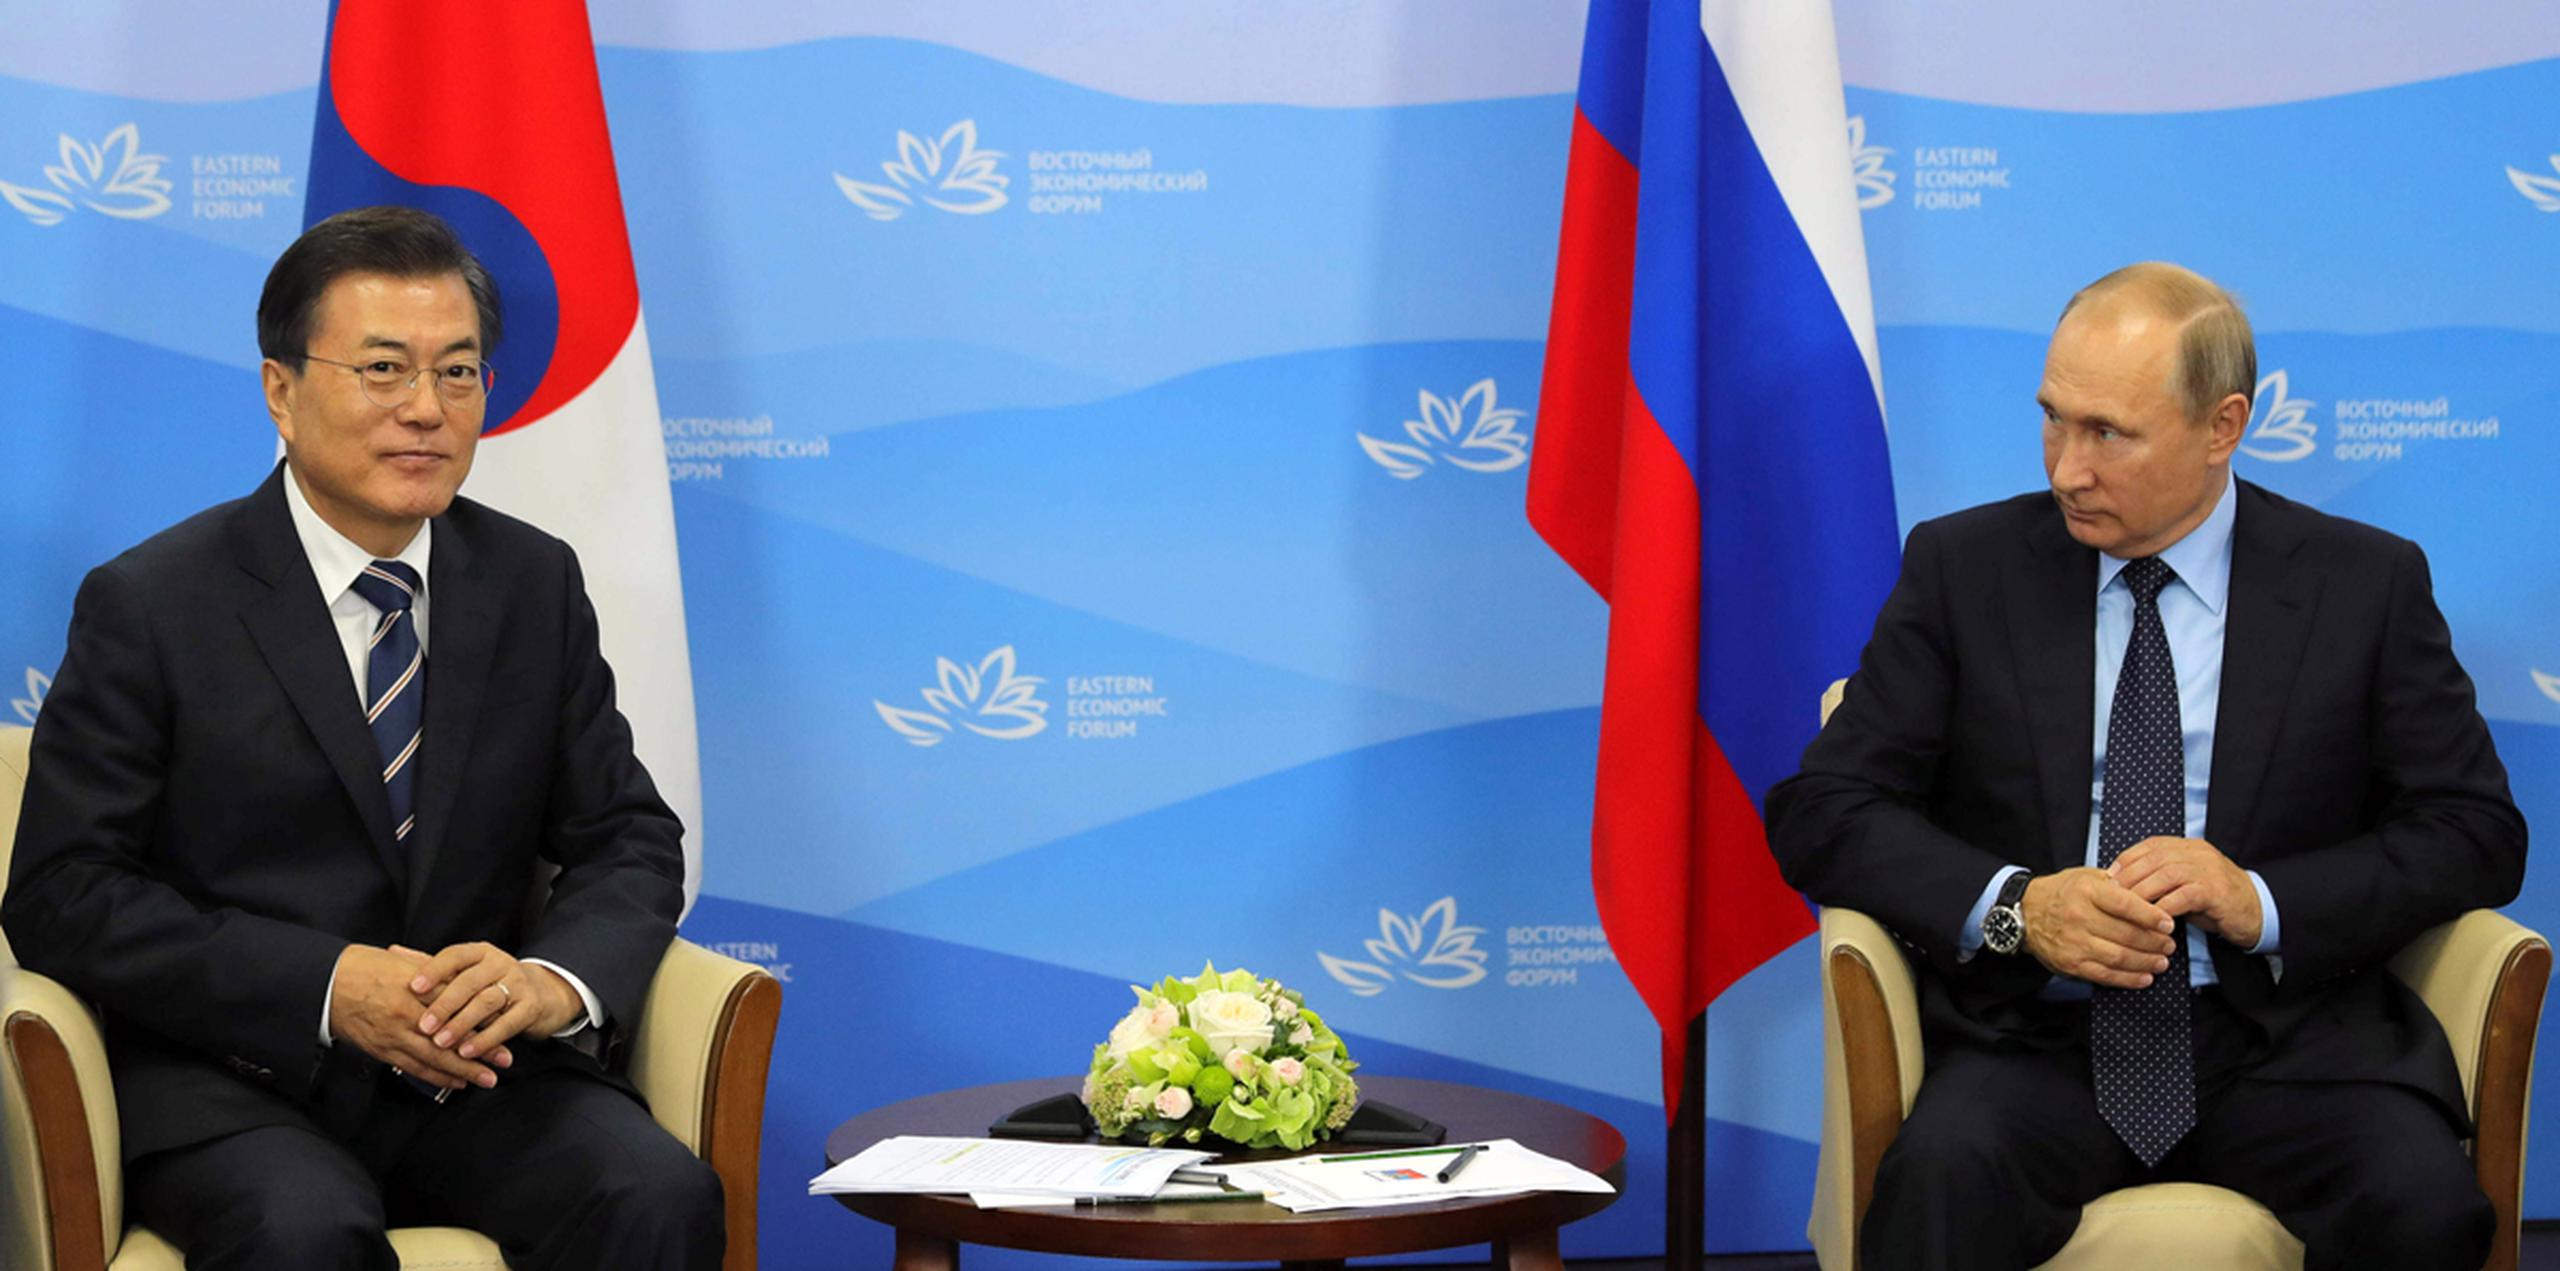 El presidente de Rusia, Vladimir Putin, a la derecha, mira al presidente de Corea del Sur, Moon Jae-in, durante su reunión en el Foro Económico Oriental en Vladivostok, Rusia. (AP)